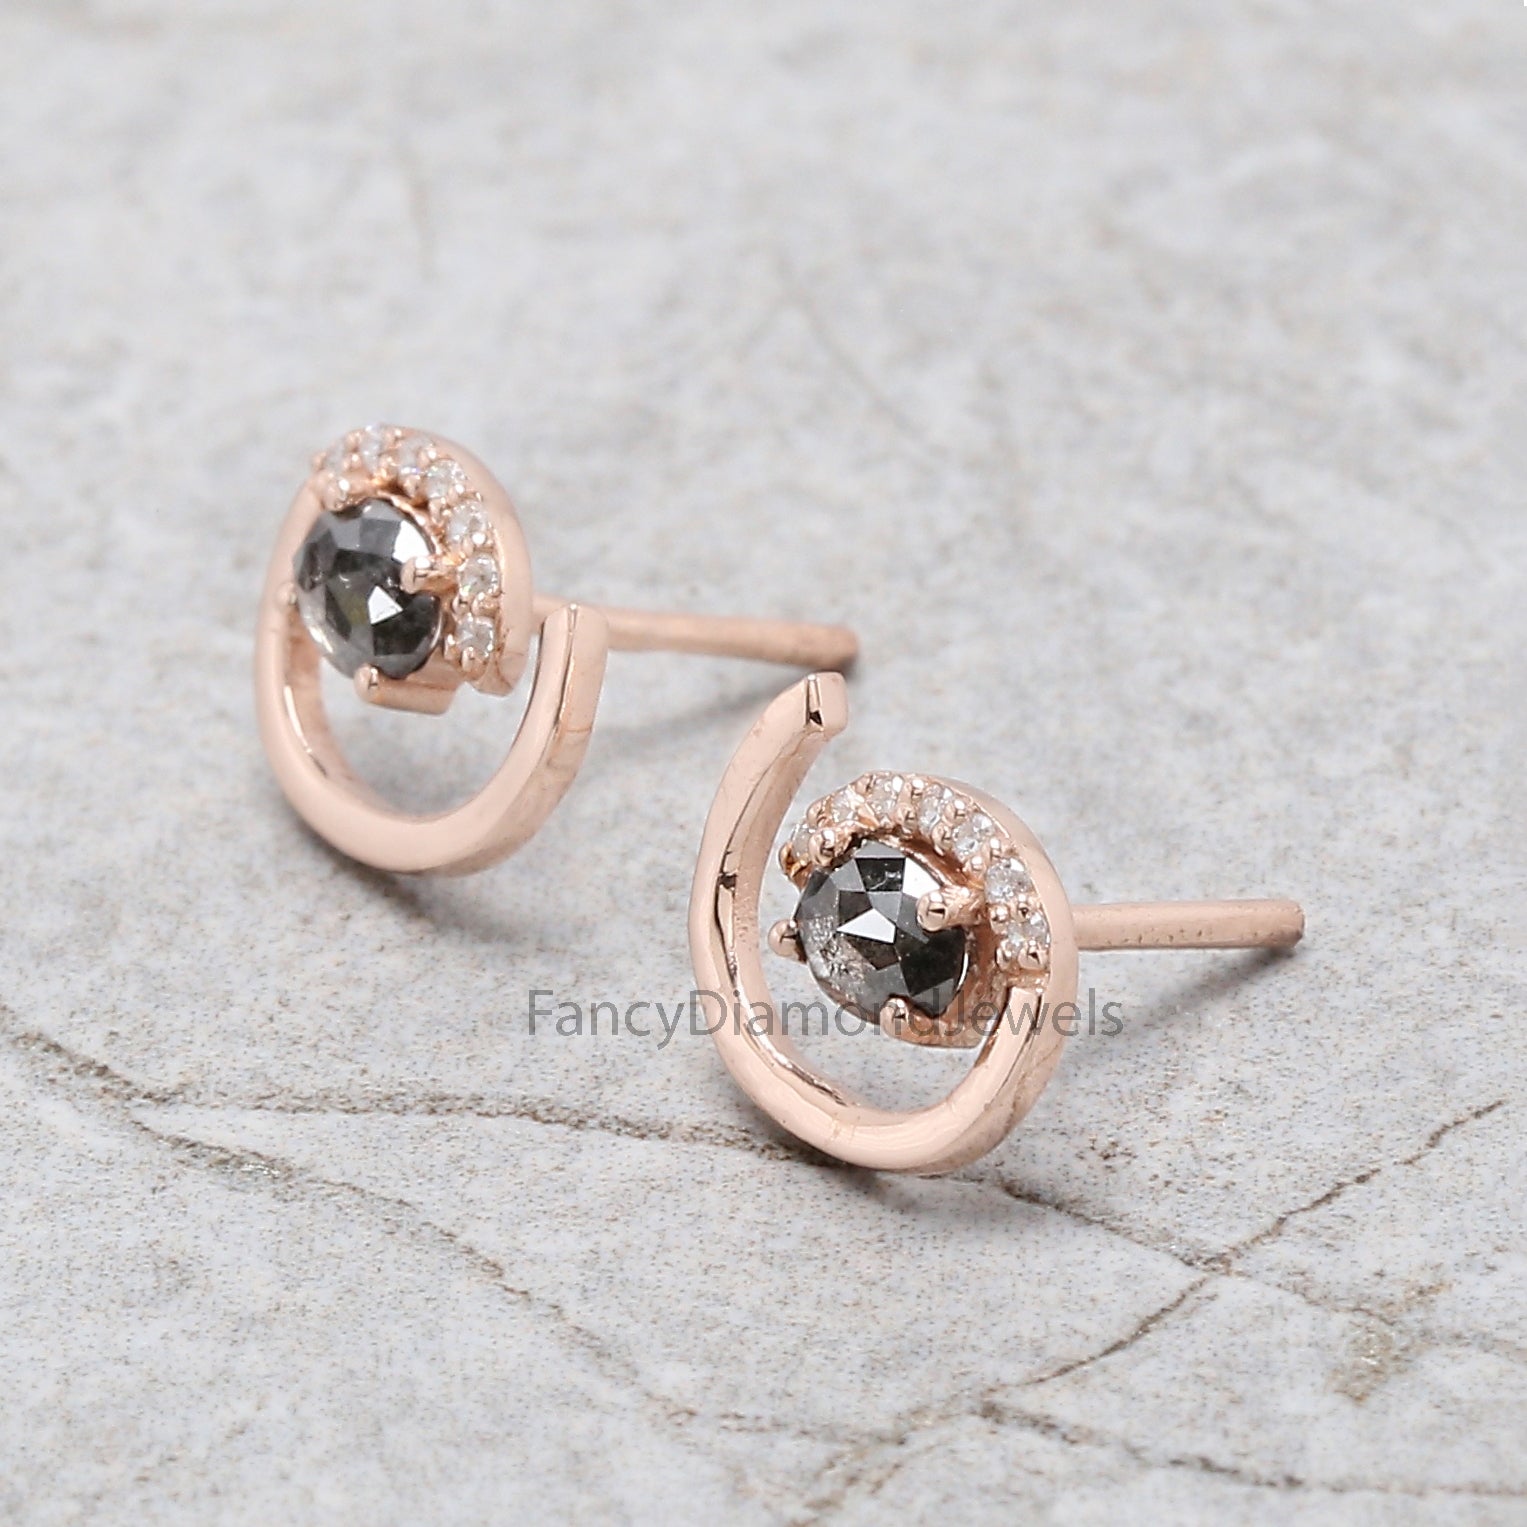 Oval Salt And Pepper Diamond Earring, Oval Shape Earring, Prong Earring, Engagement Earring, Earlobe Earrings, Earrings Jewelry KDN2293